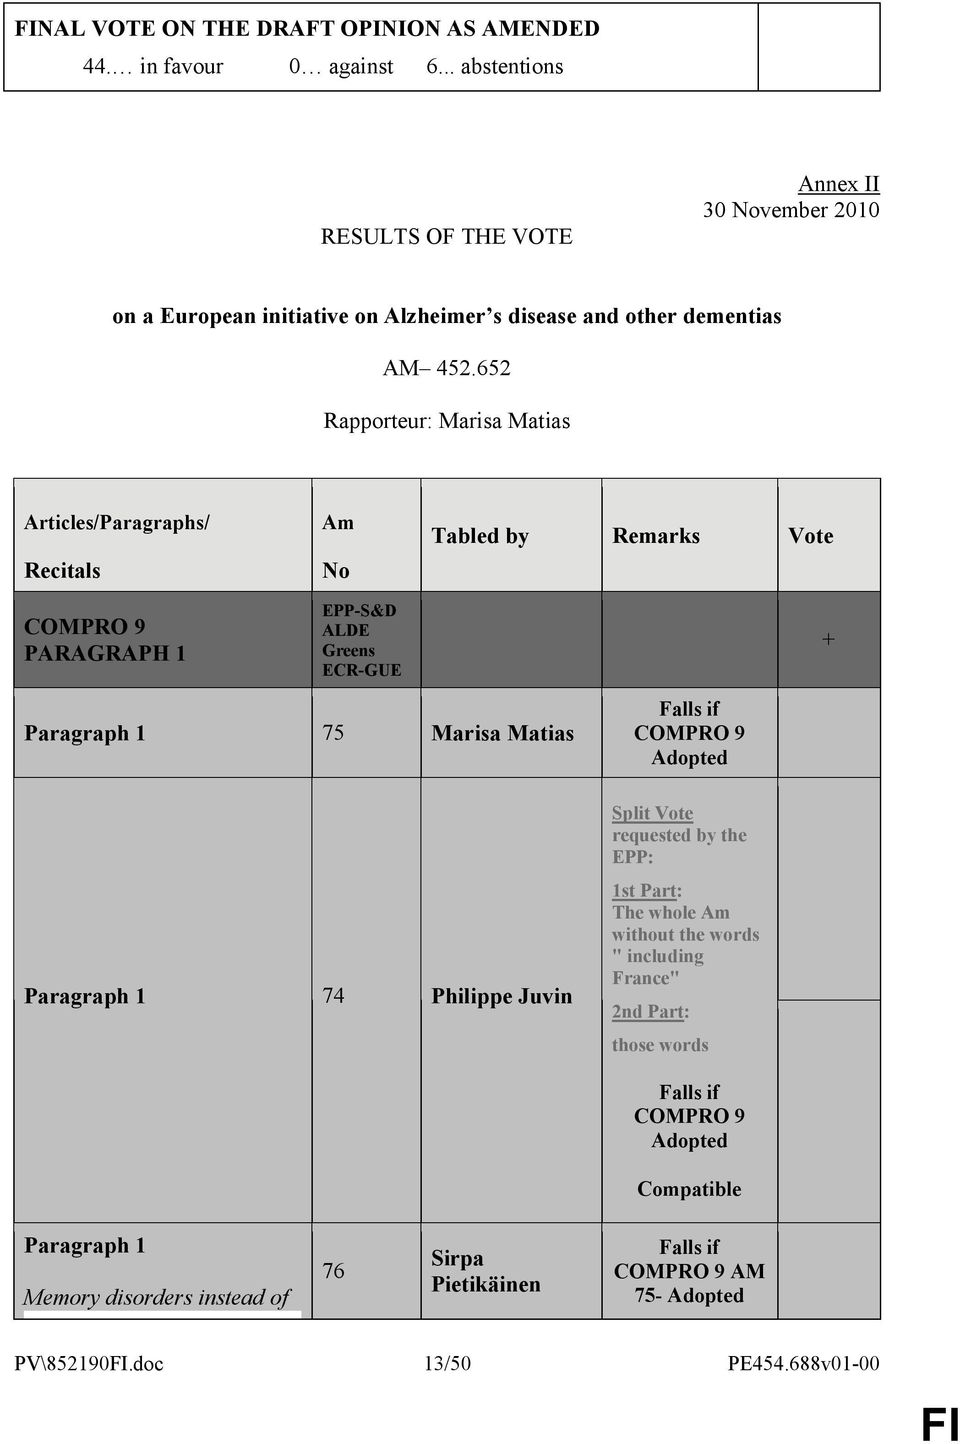 652 Rapporteur: Marisa Matias Articles/Paragraphs/ Recitals COMPRO 9 PARAGRAPH 1 Am No EPP-S&D ALDE Greens ECR-GUE Tabled by Remarks Vote Paragraph 1 75 Marisa